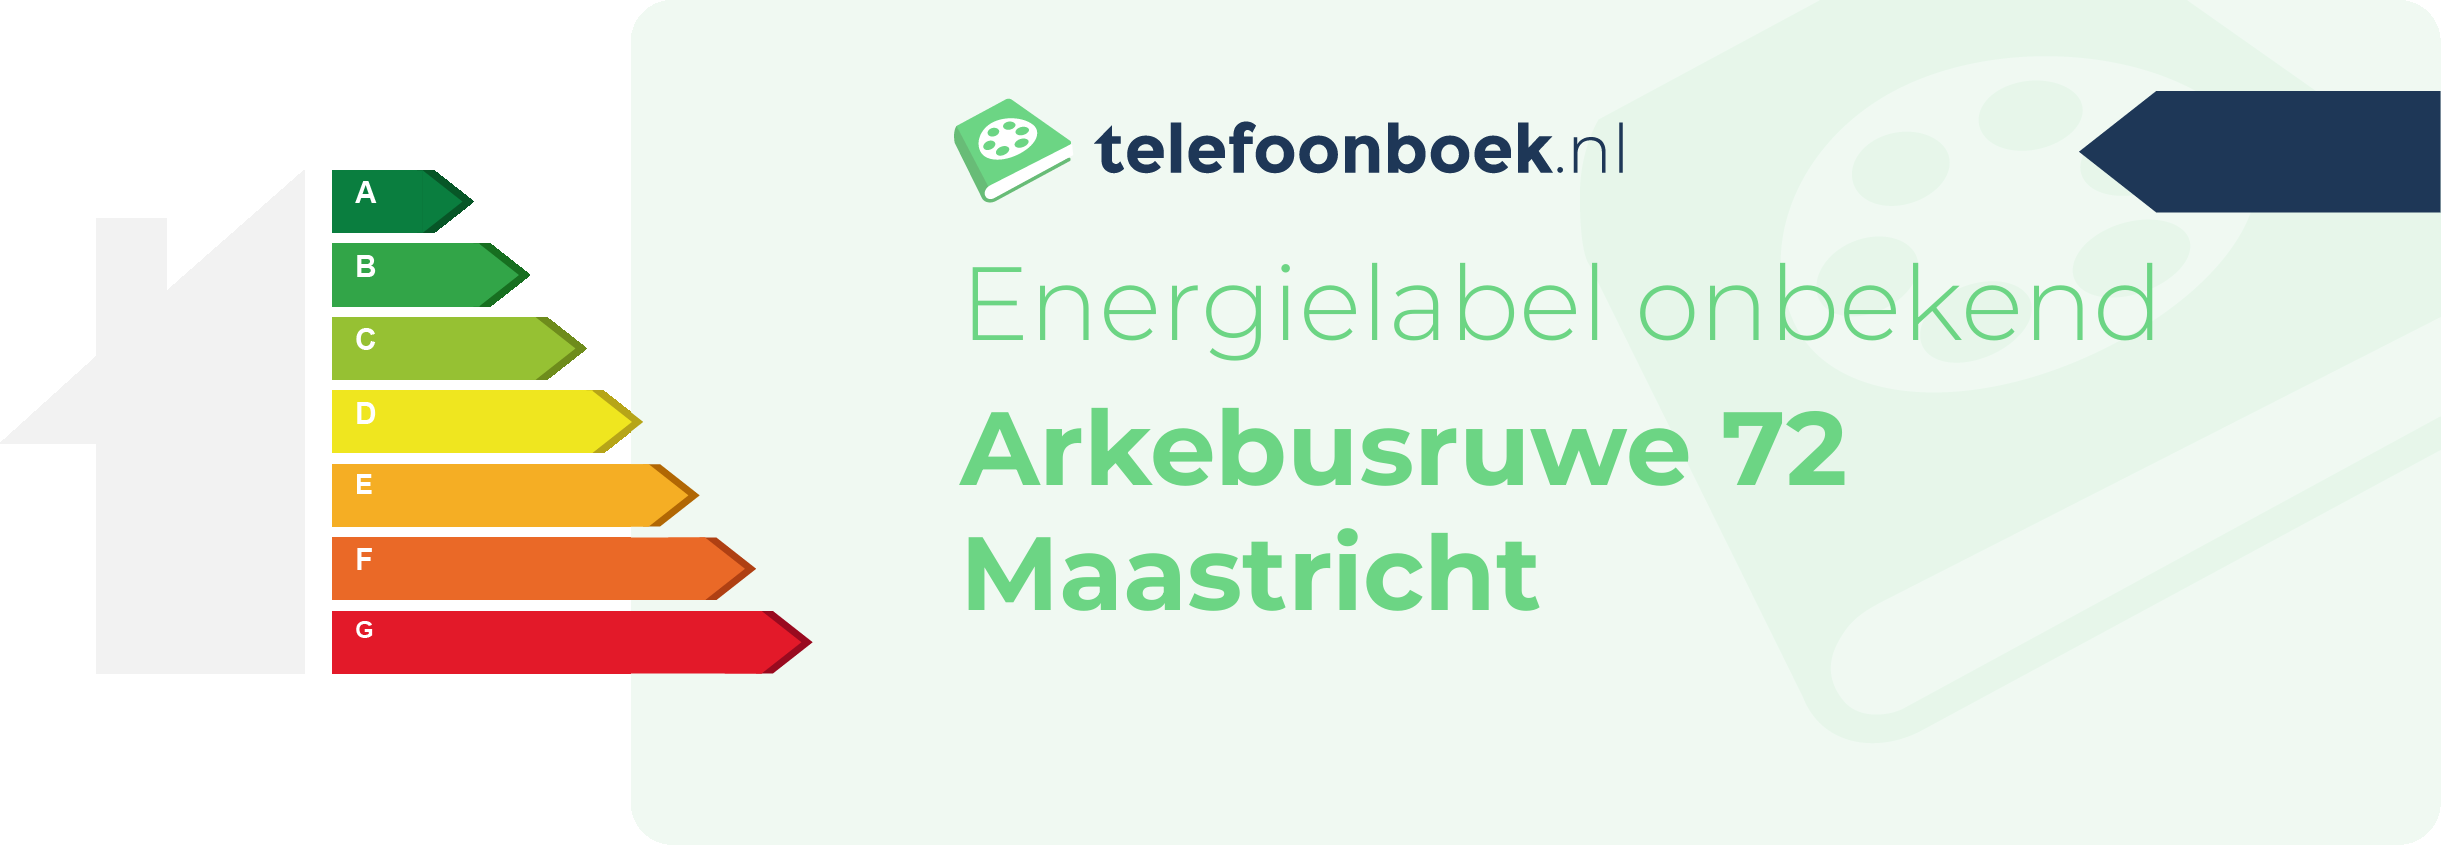 Energielabel Arkebusruwe 72 Maastricht